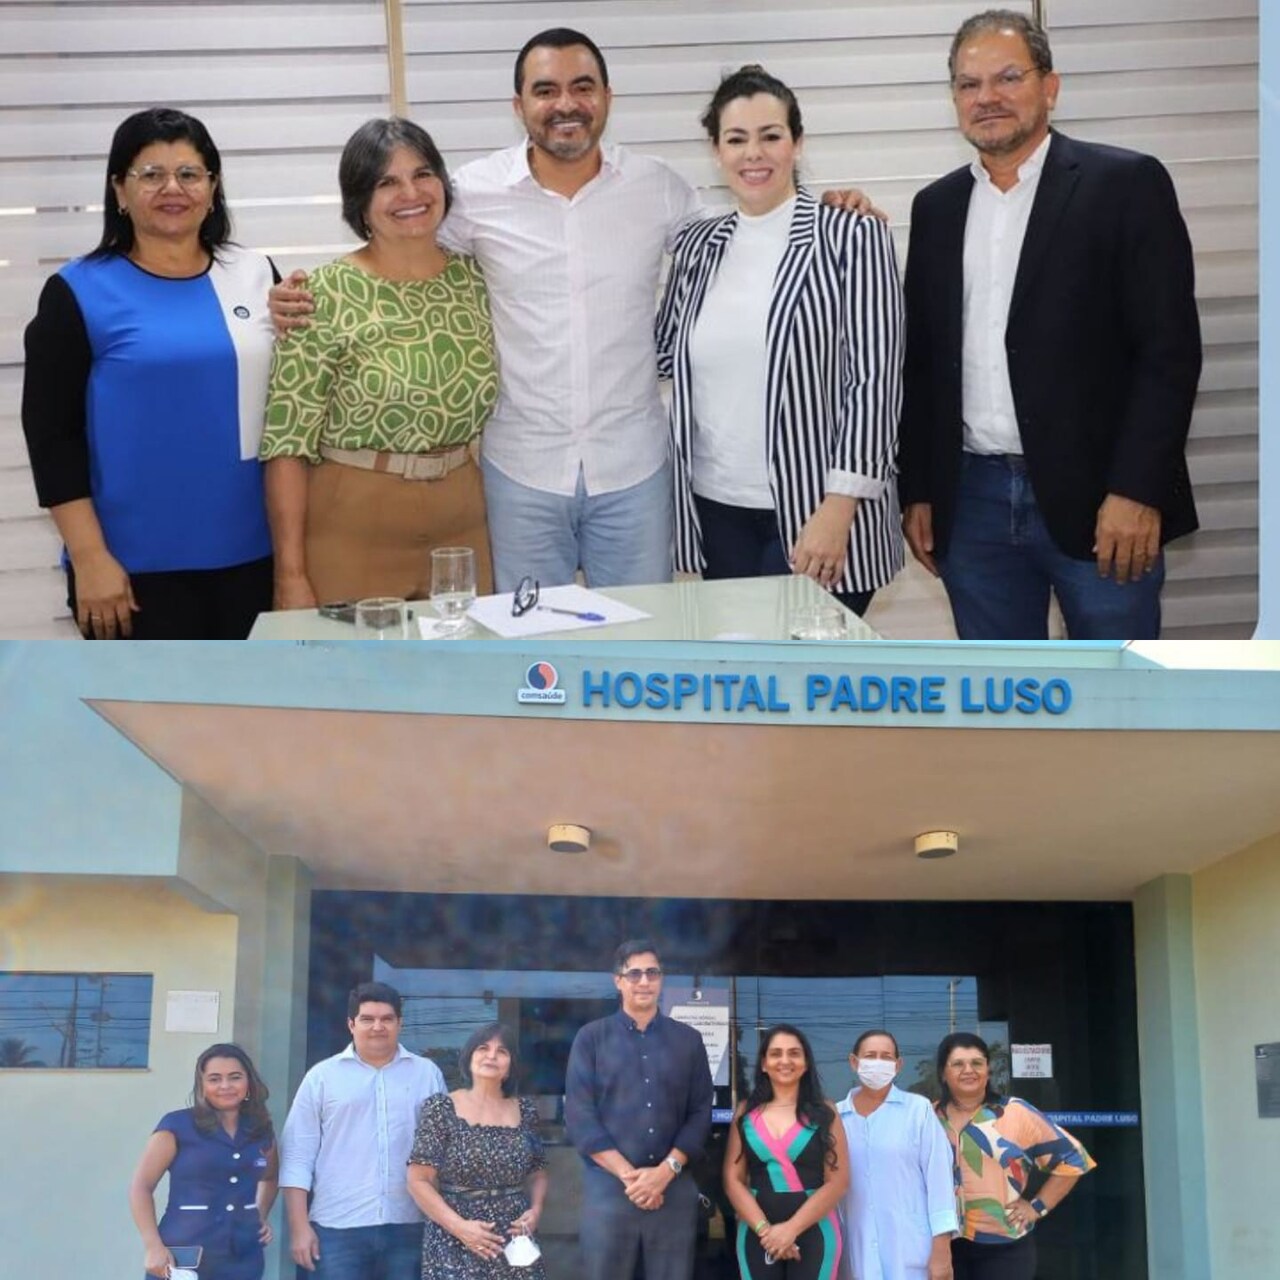 Deputada Vanda comemora parceria com Hospital Padre Luso para cirurgias eletivas e lembra articulação junto ao Governo para credenciamento do hospital